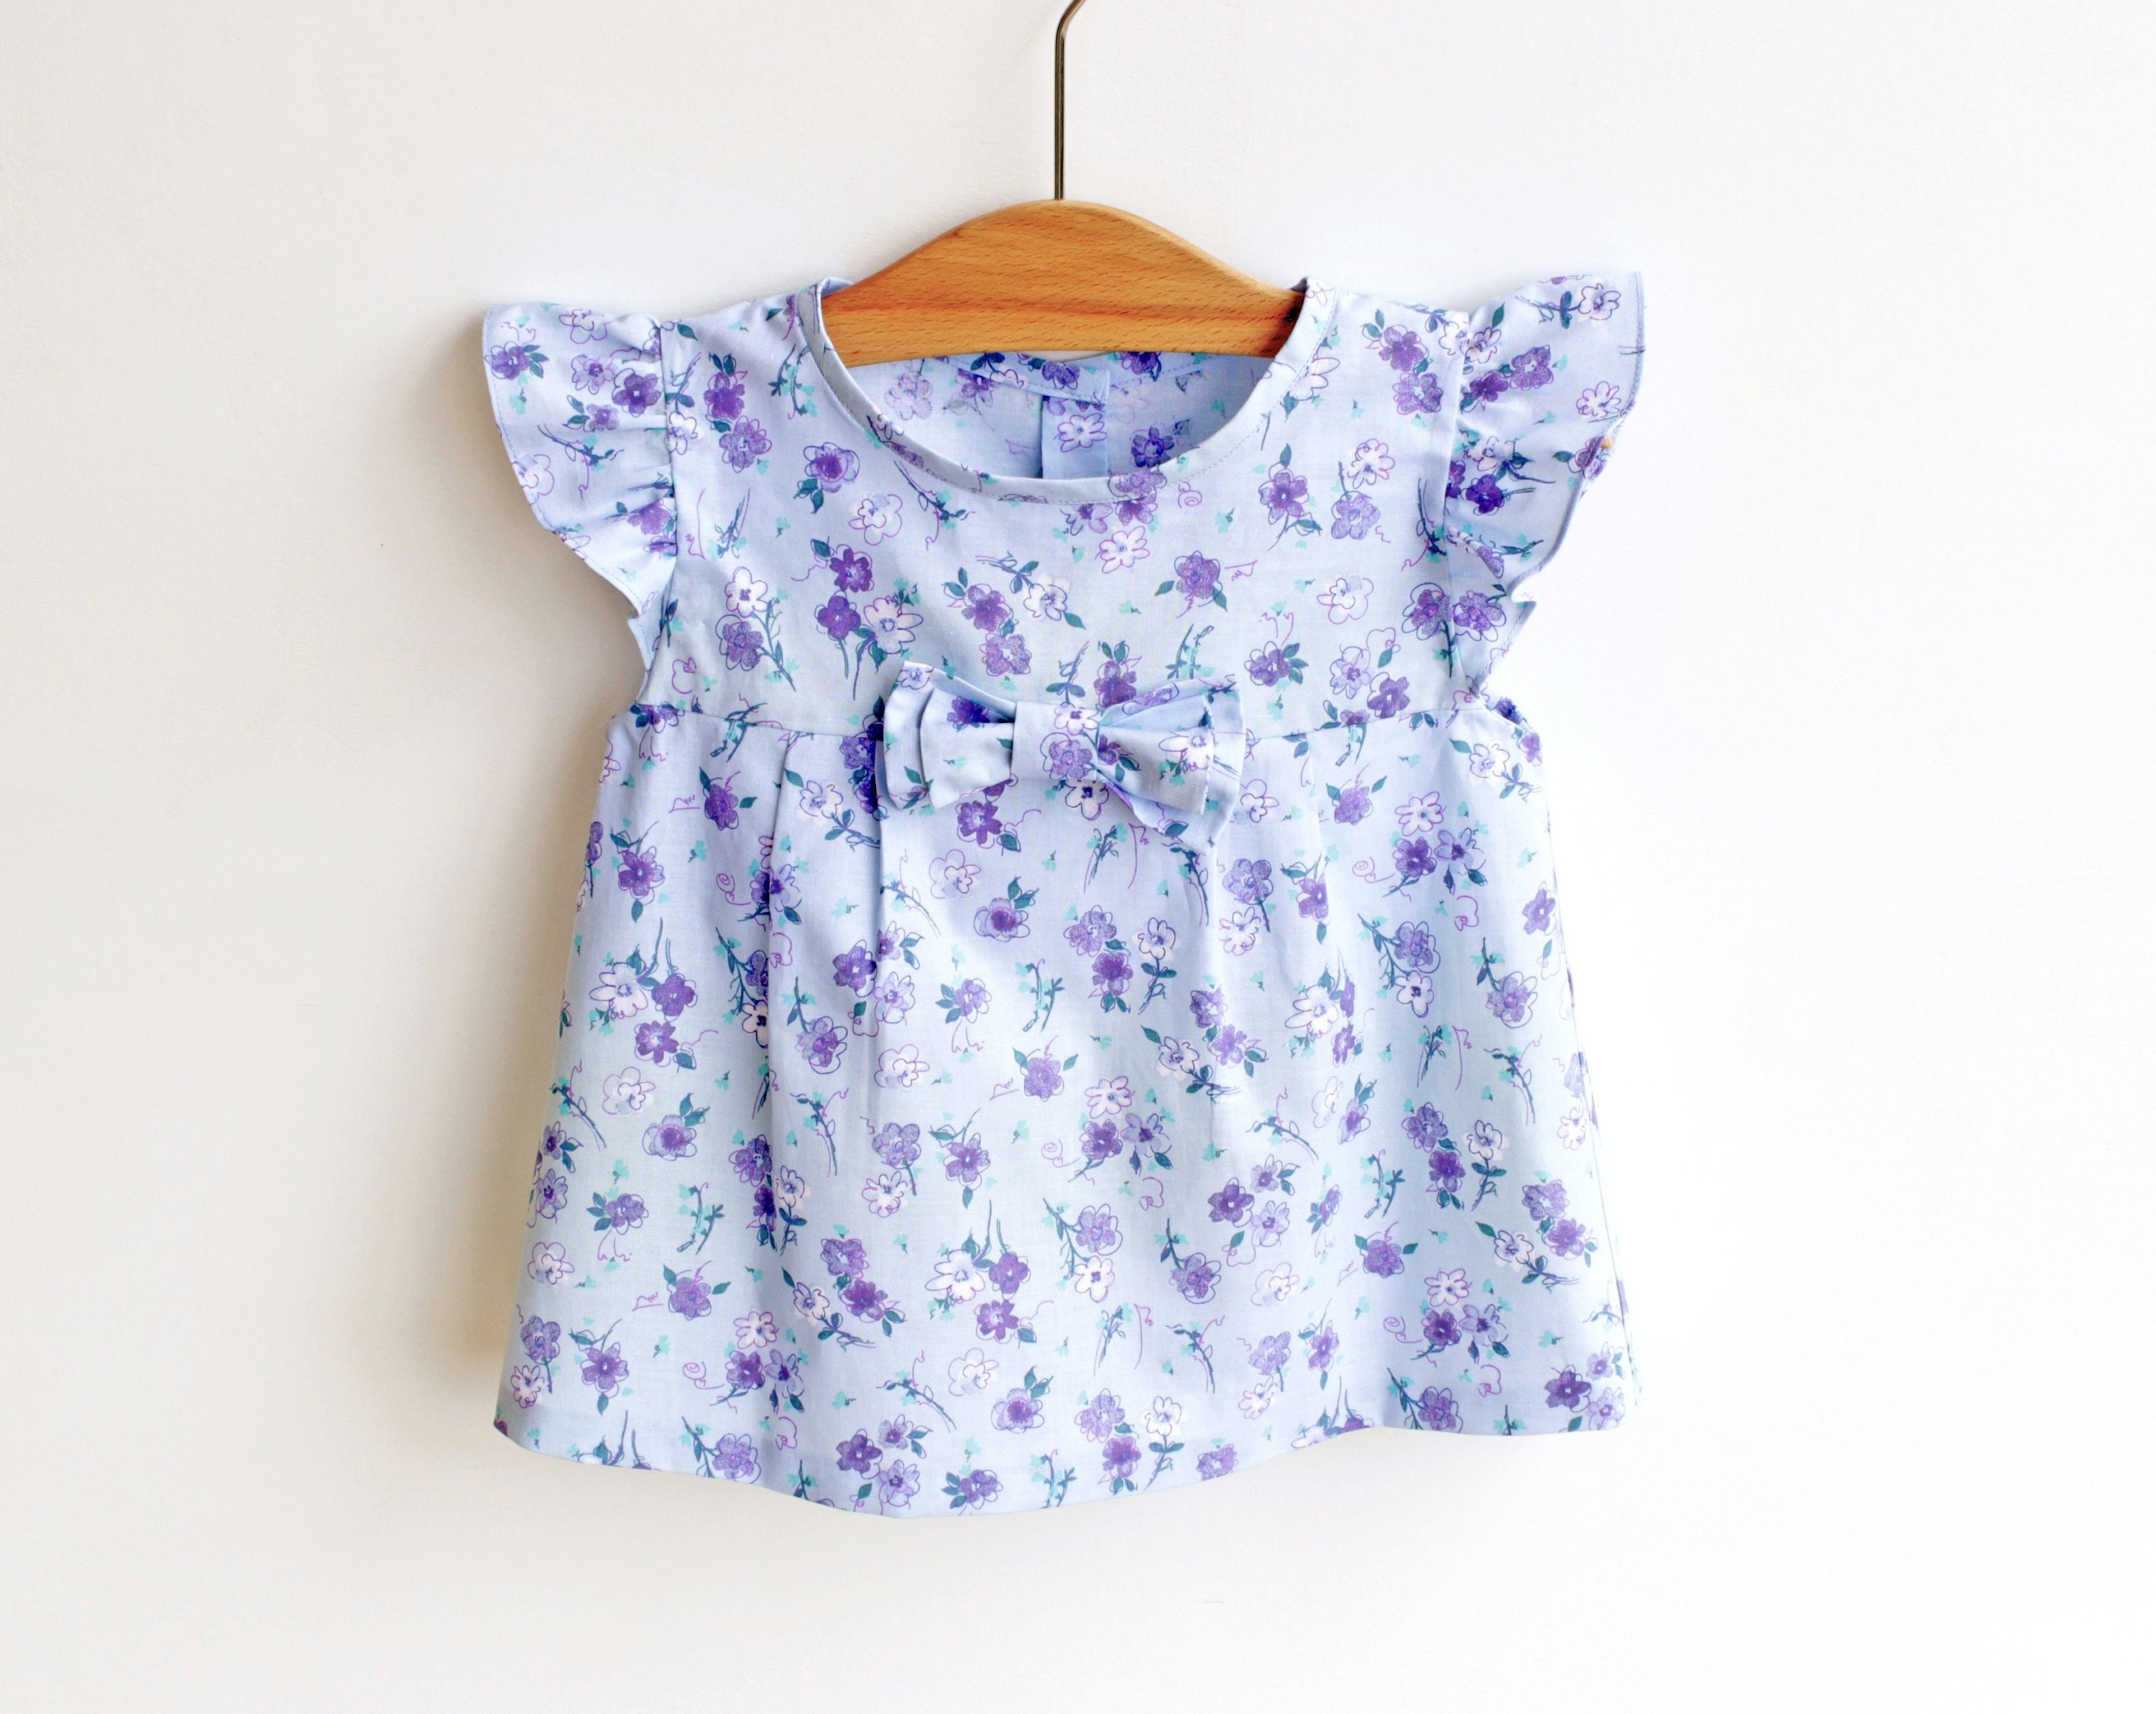 LIBERTY Style Girl Blouse Tunic Top Shirt Sewing Pattern Pdf | Etsy